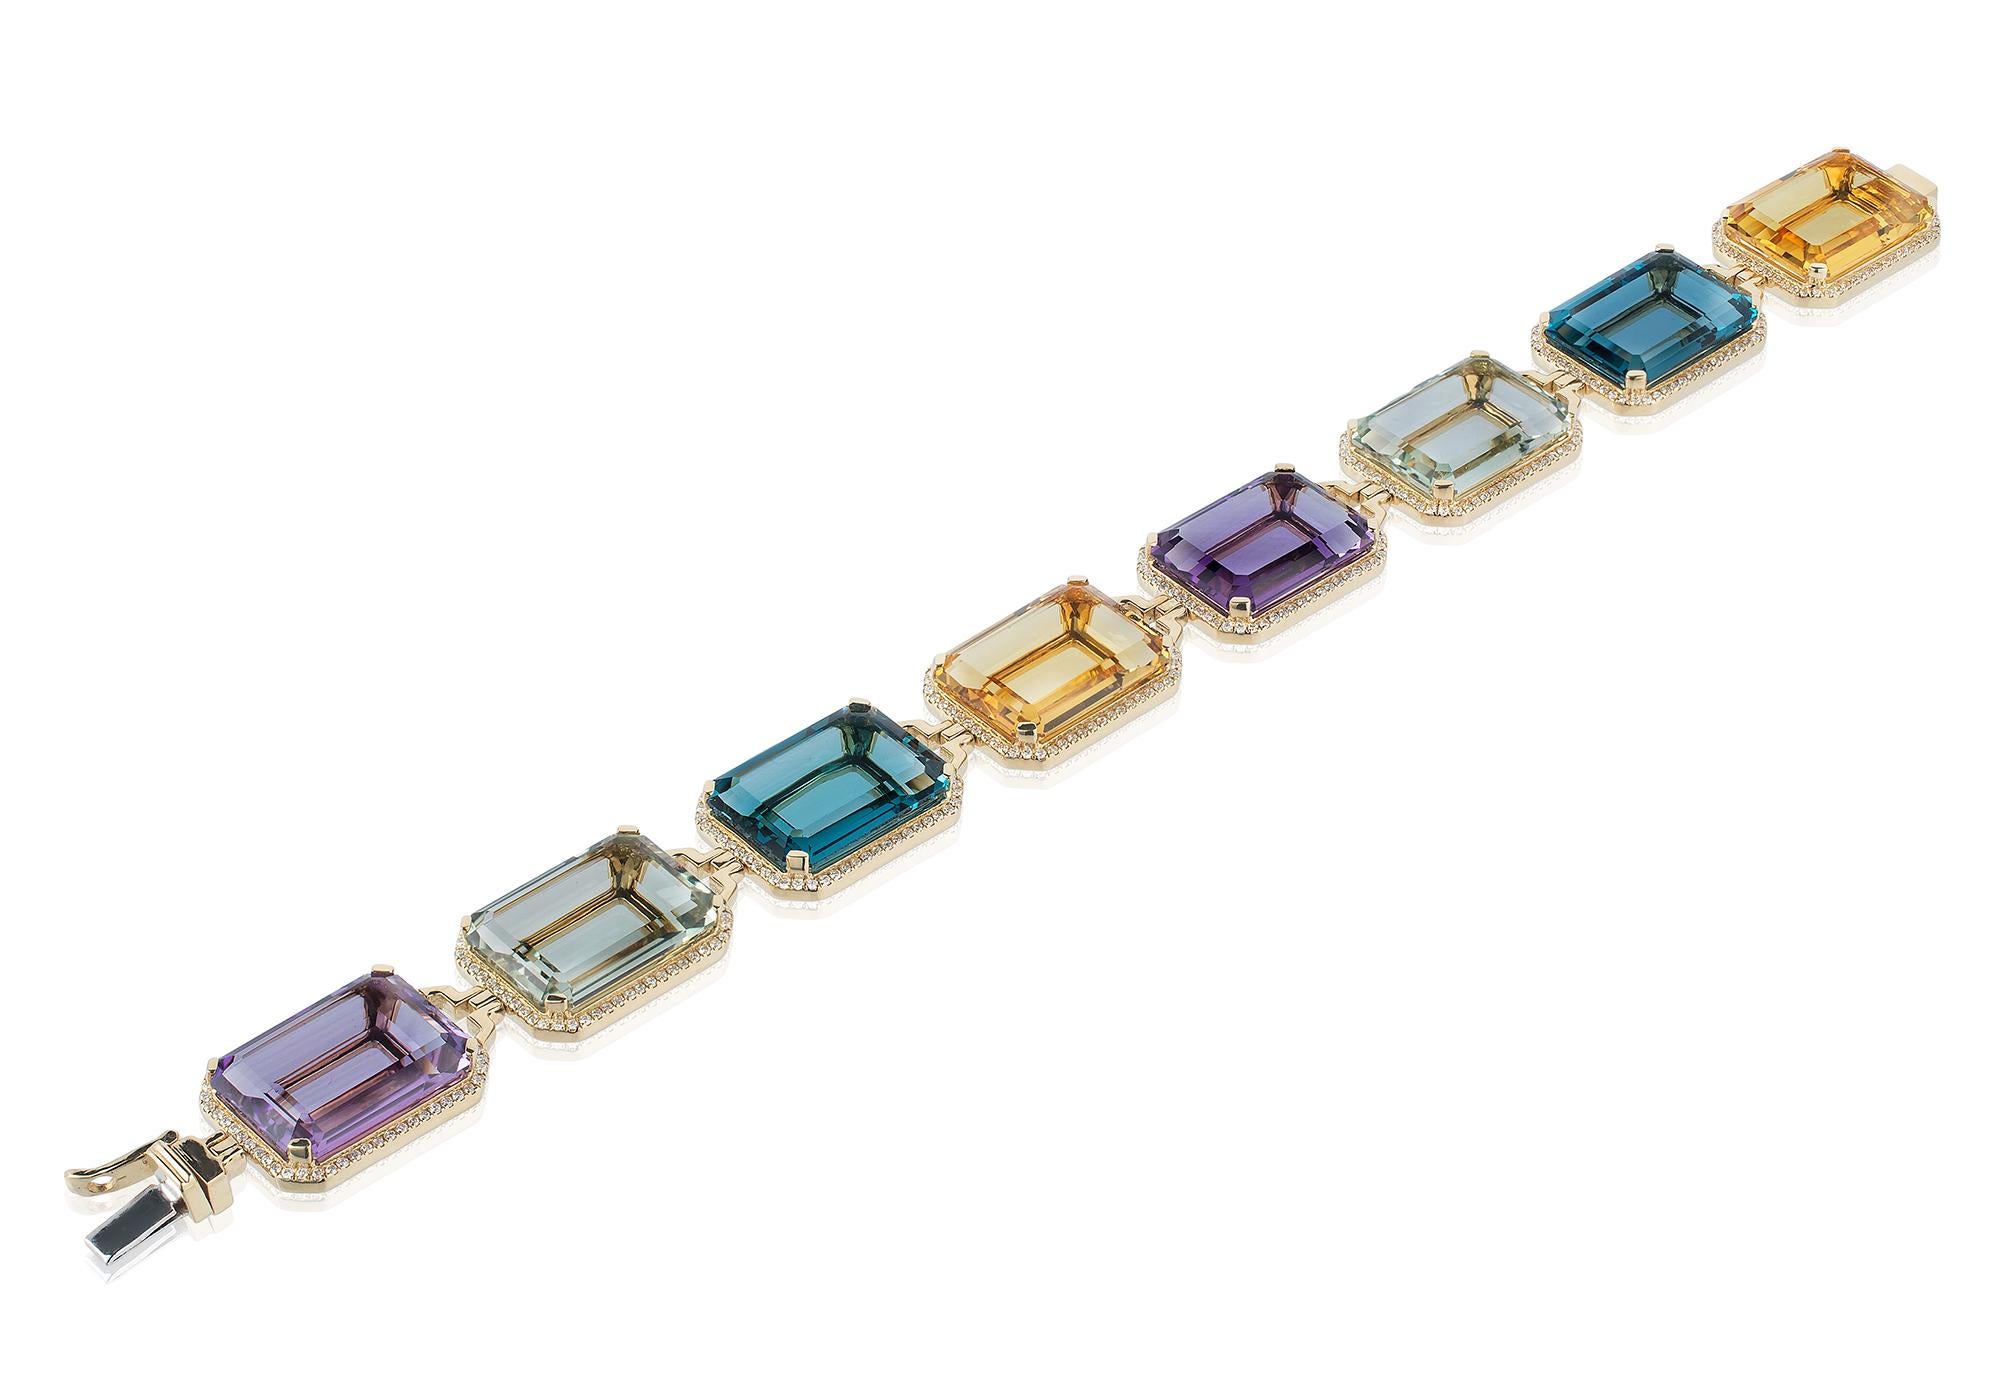 Ce bracelet en or jaune 18 carats avec diamants, composé d'améthyste, de prasiolite, de topaze bleue de Londres et de citrine taille émeraude, est un magnifique bijou de la Collection 'Gossip'. Le bracelet présente une combinaison de quatre pierres